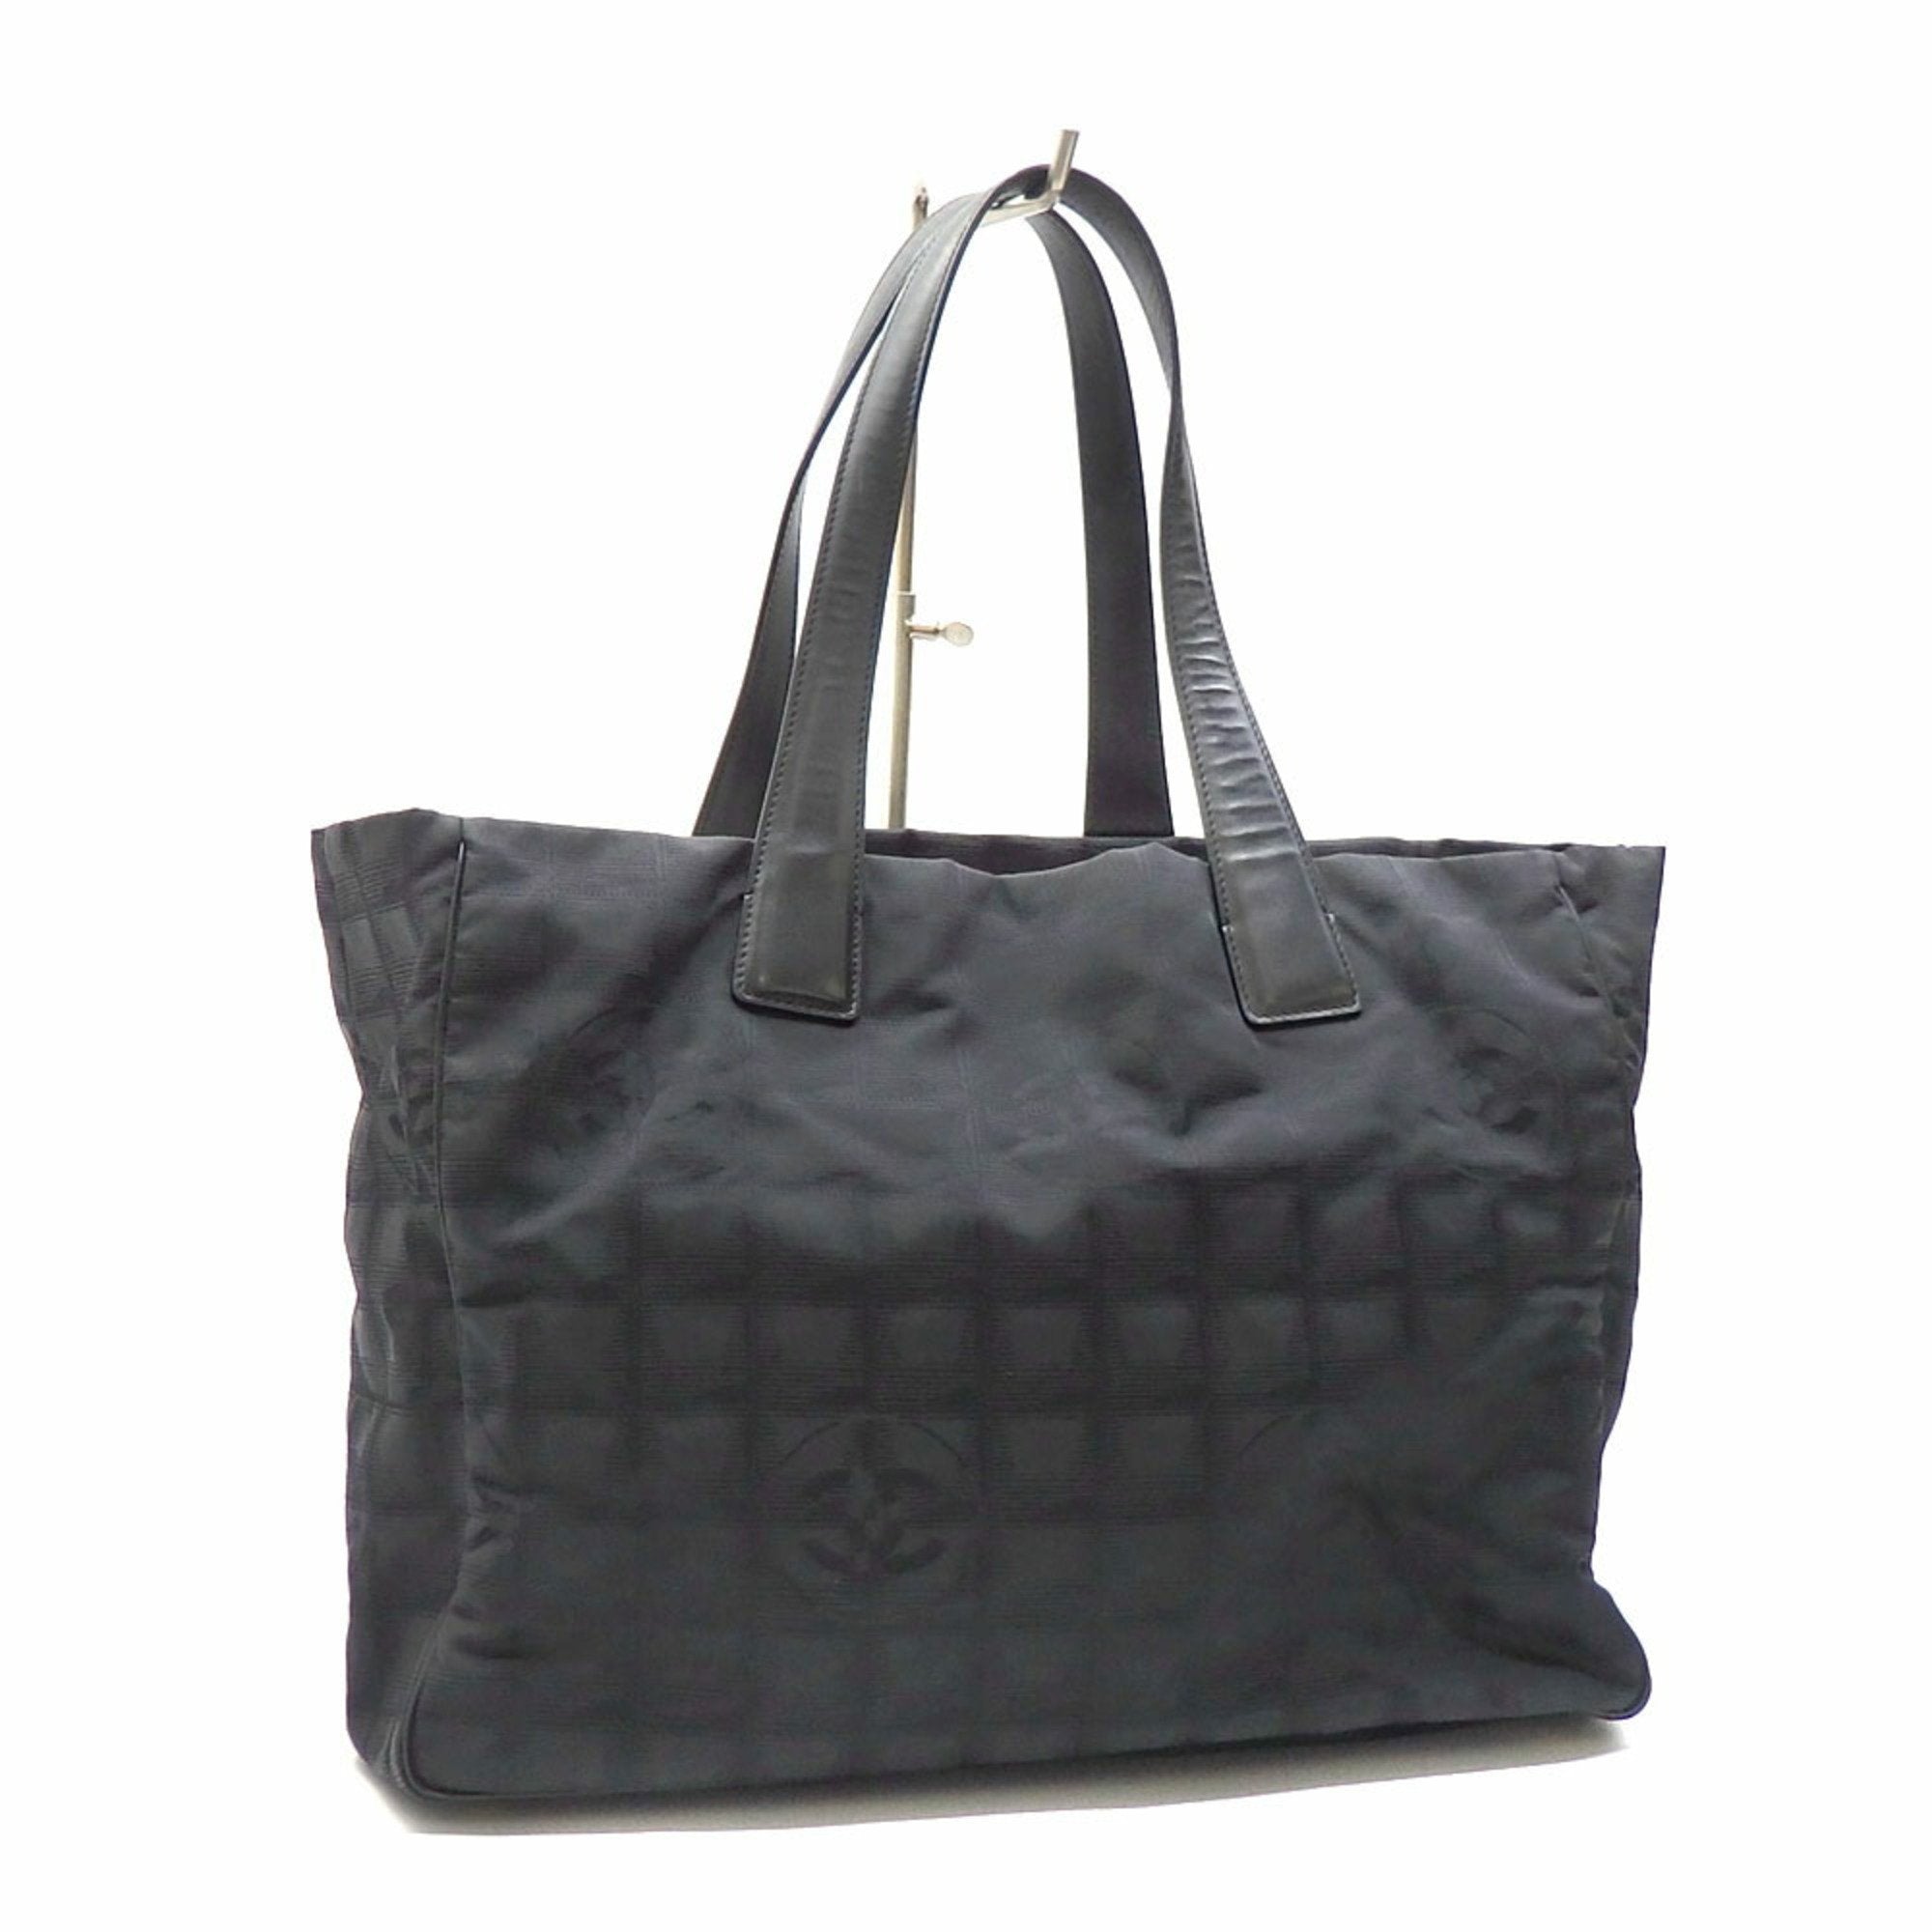 Superb Chanel Cabas handbag in black quilted leather, bi-color